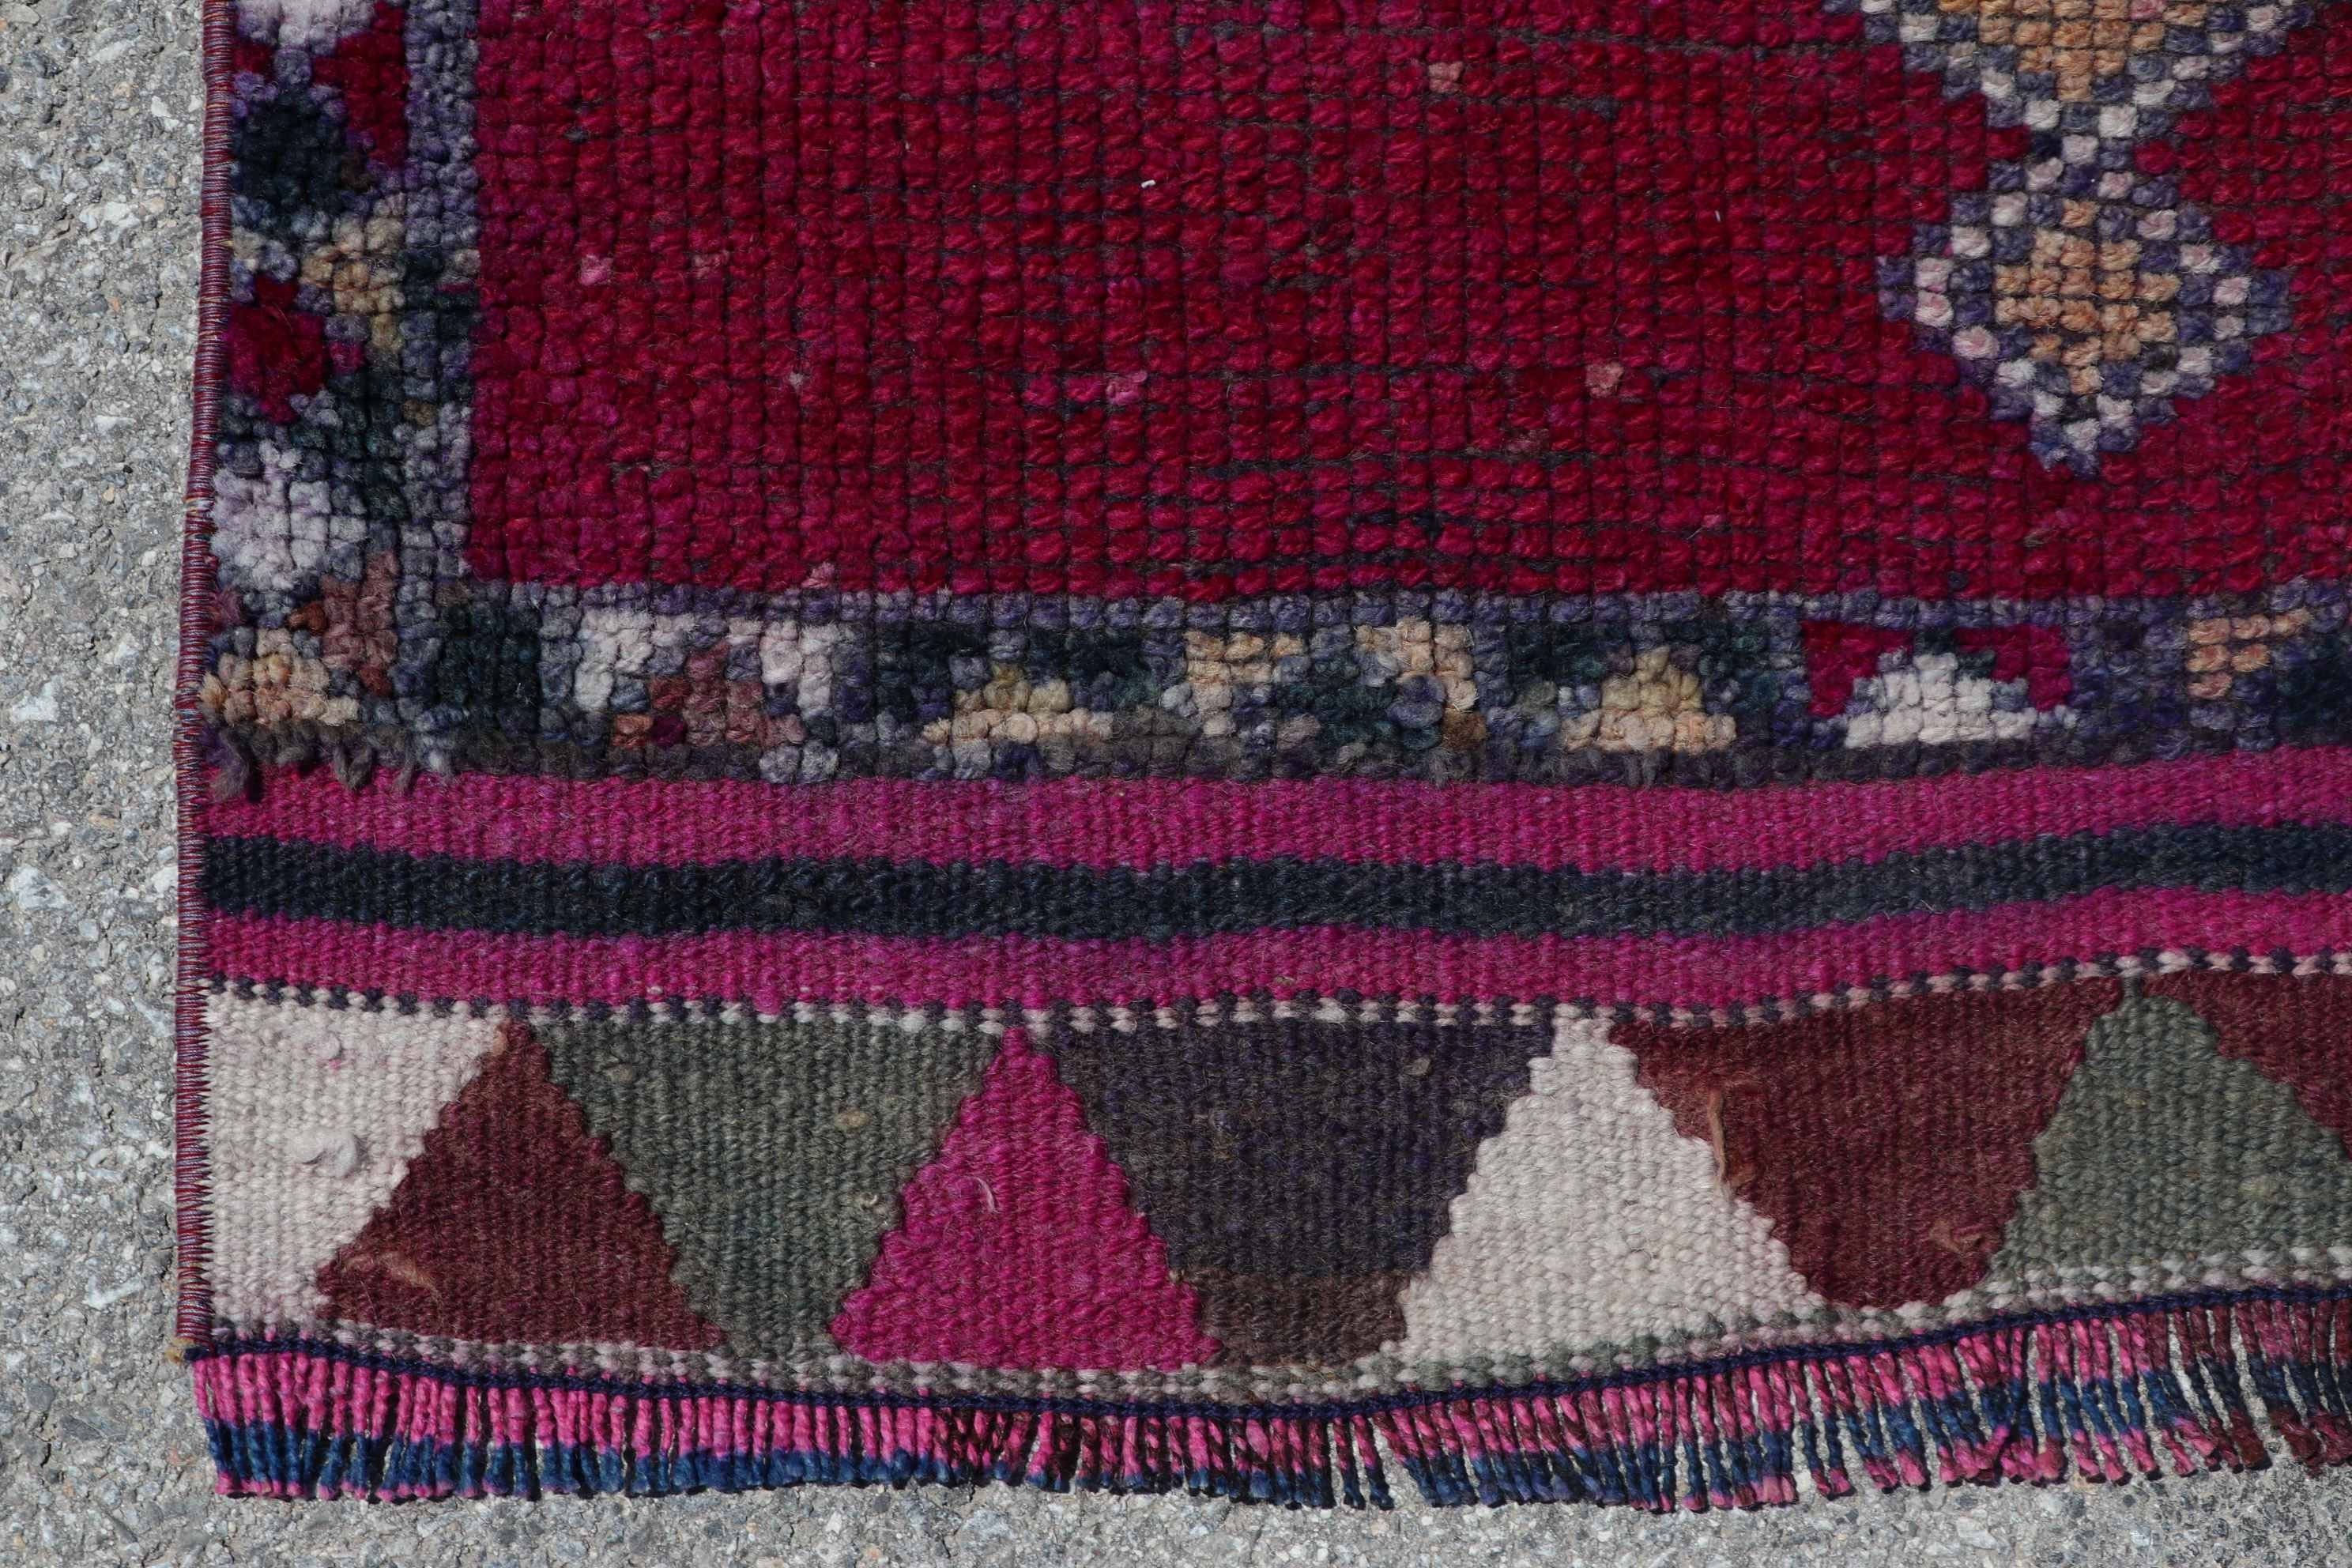 Vintage Rug, Kitchen Rug, Rugs for Hallway, Oriental Rugs, Hallway Rugs, 2.9x10.9 ft Runner Rugs, Turkish Rug, Pink Oushak Rugs, Cool Rug